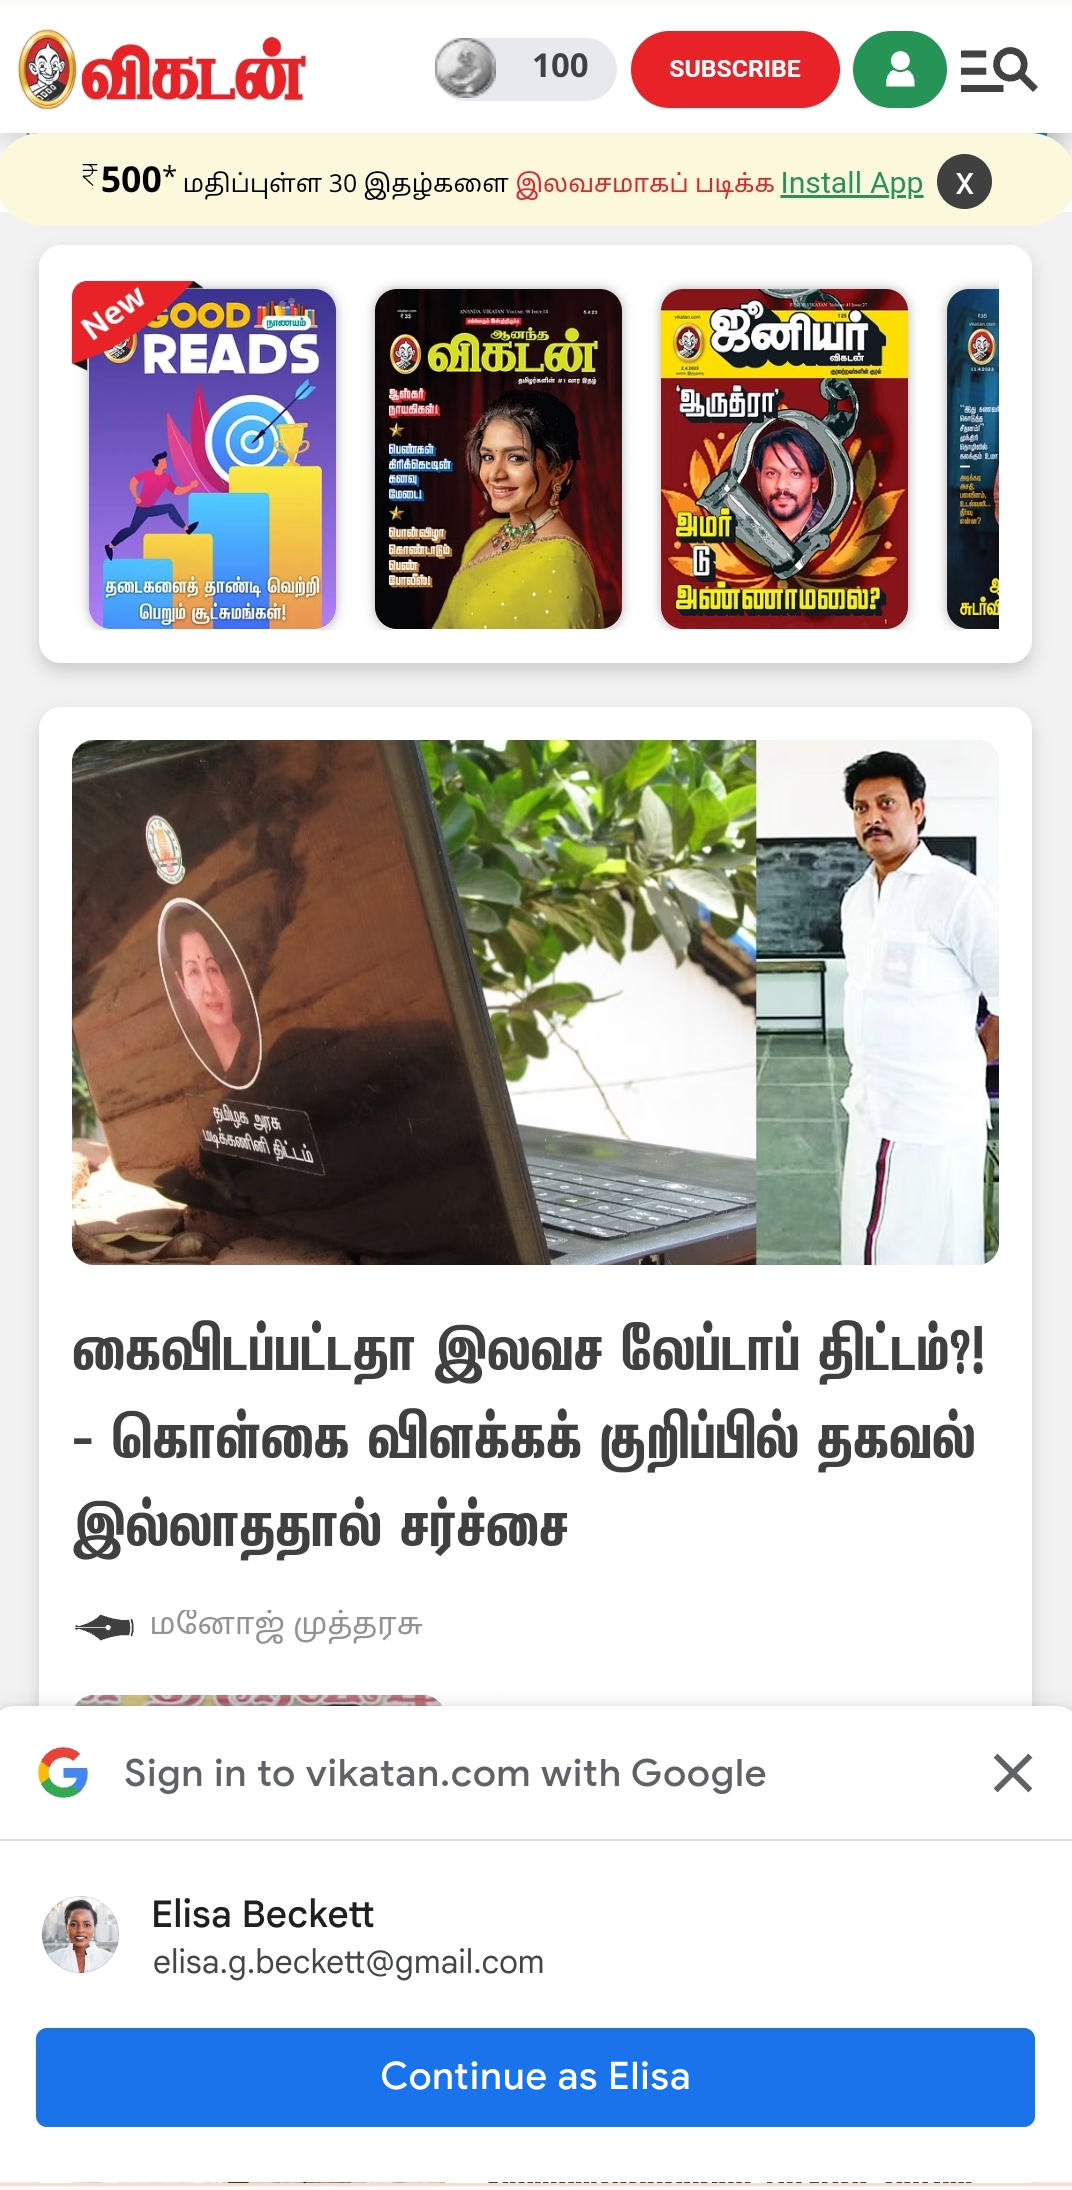 تصویری از صفحه وب تلفن همراه Vikatan با استفاده از سرویس هویت Google One Tap.